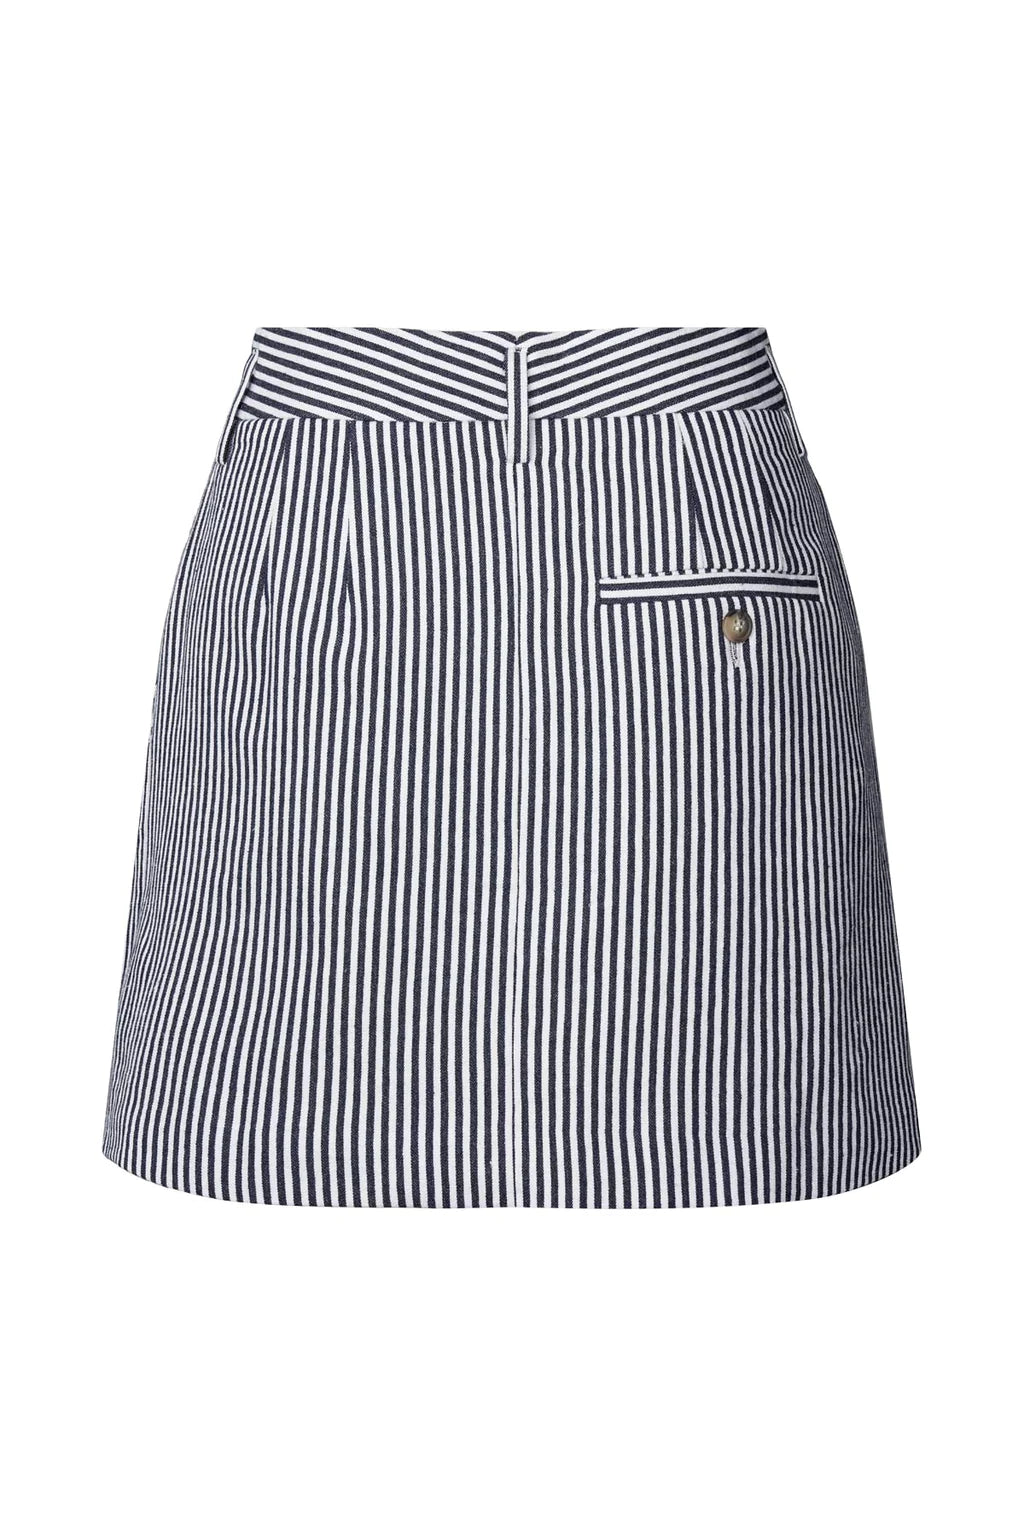 Rabens Saloner Easy Tailoring Short Skirt Hollie Blue Stripe